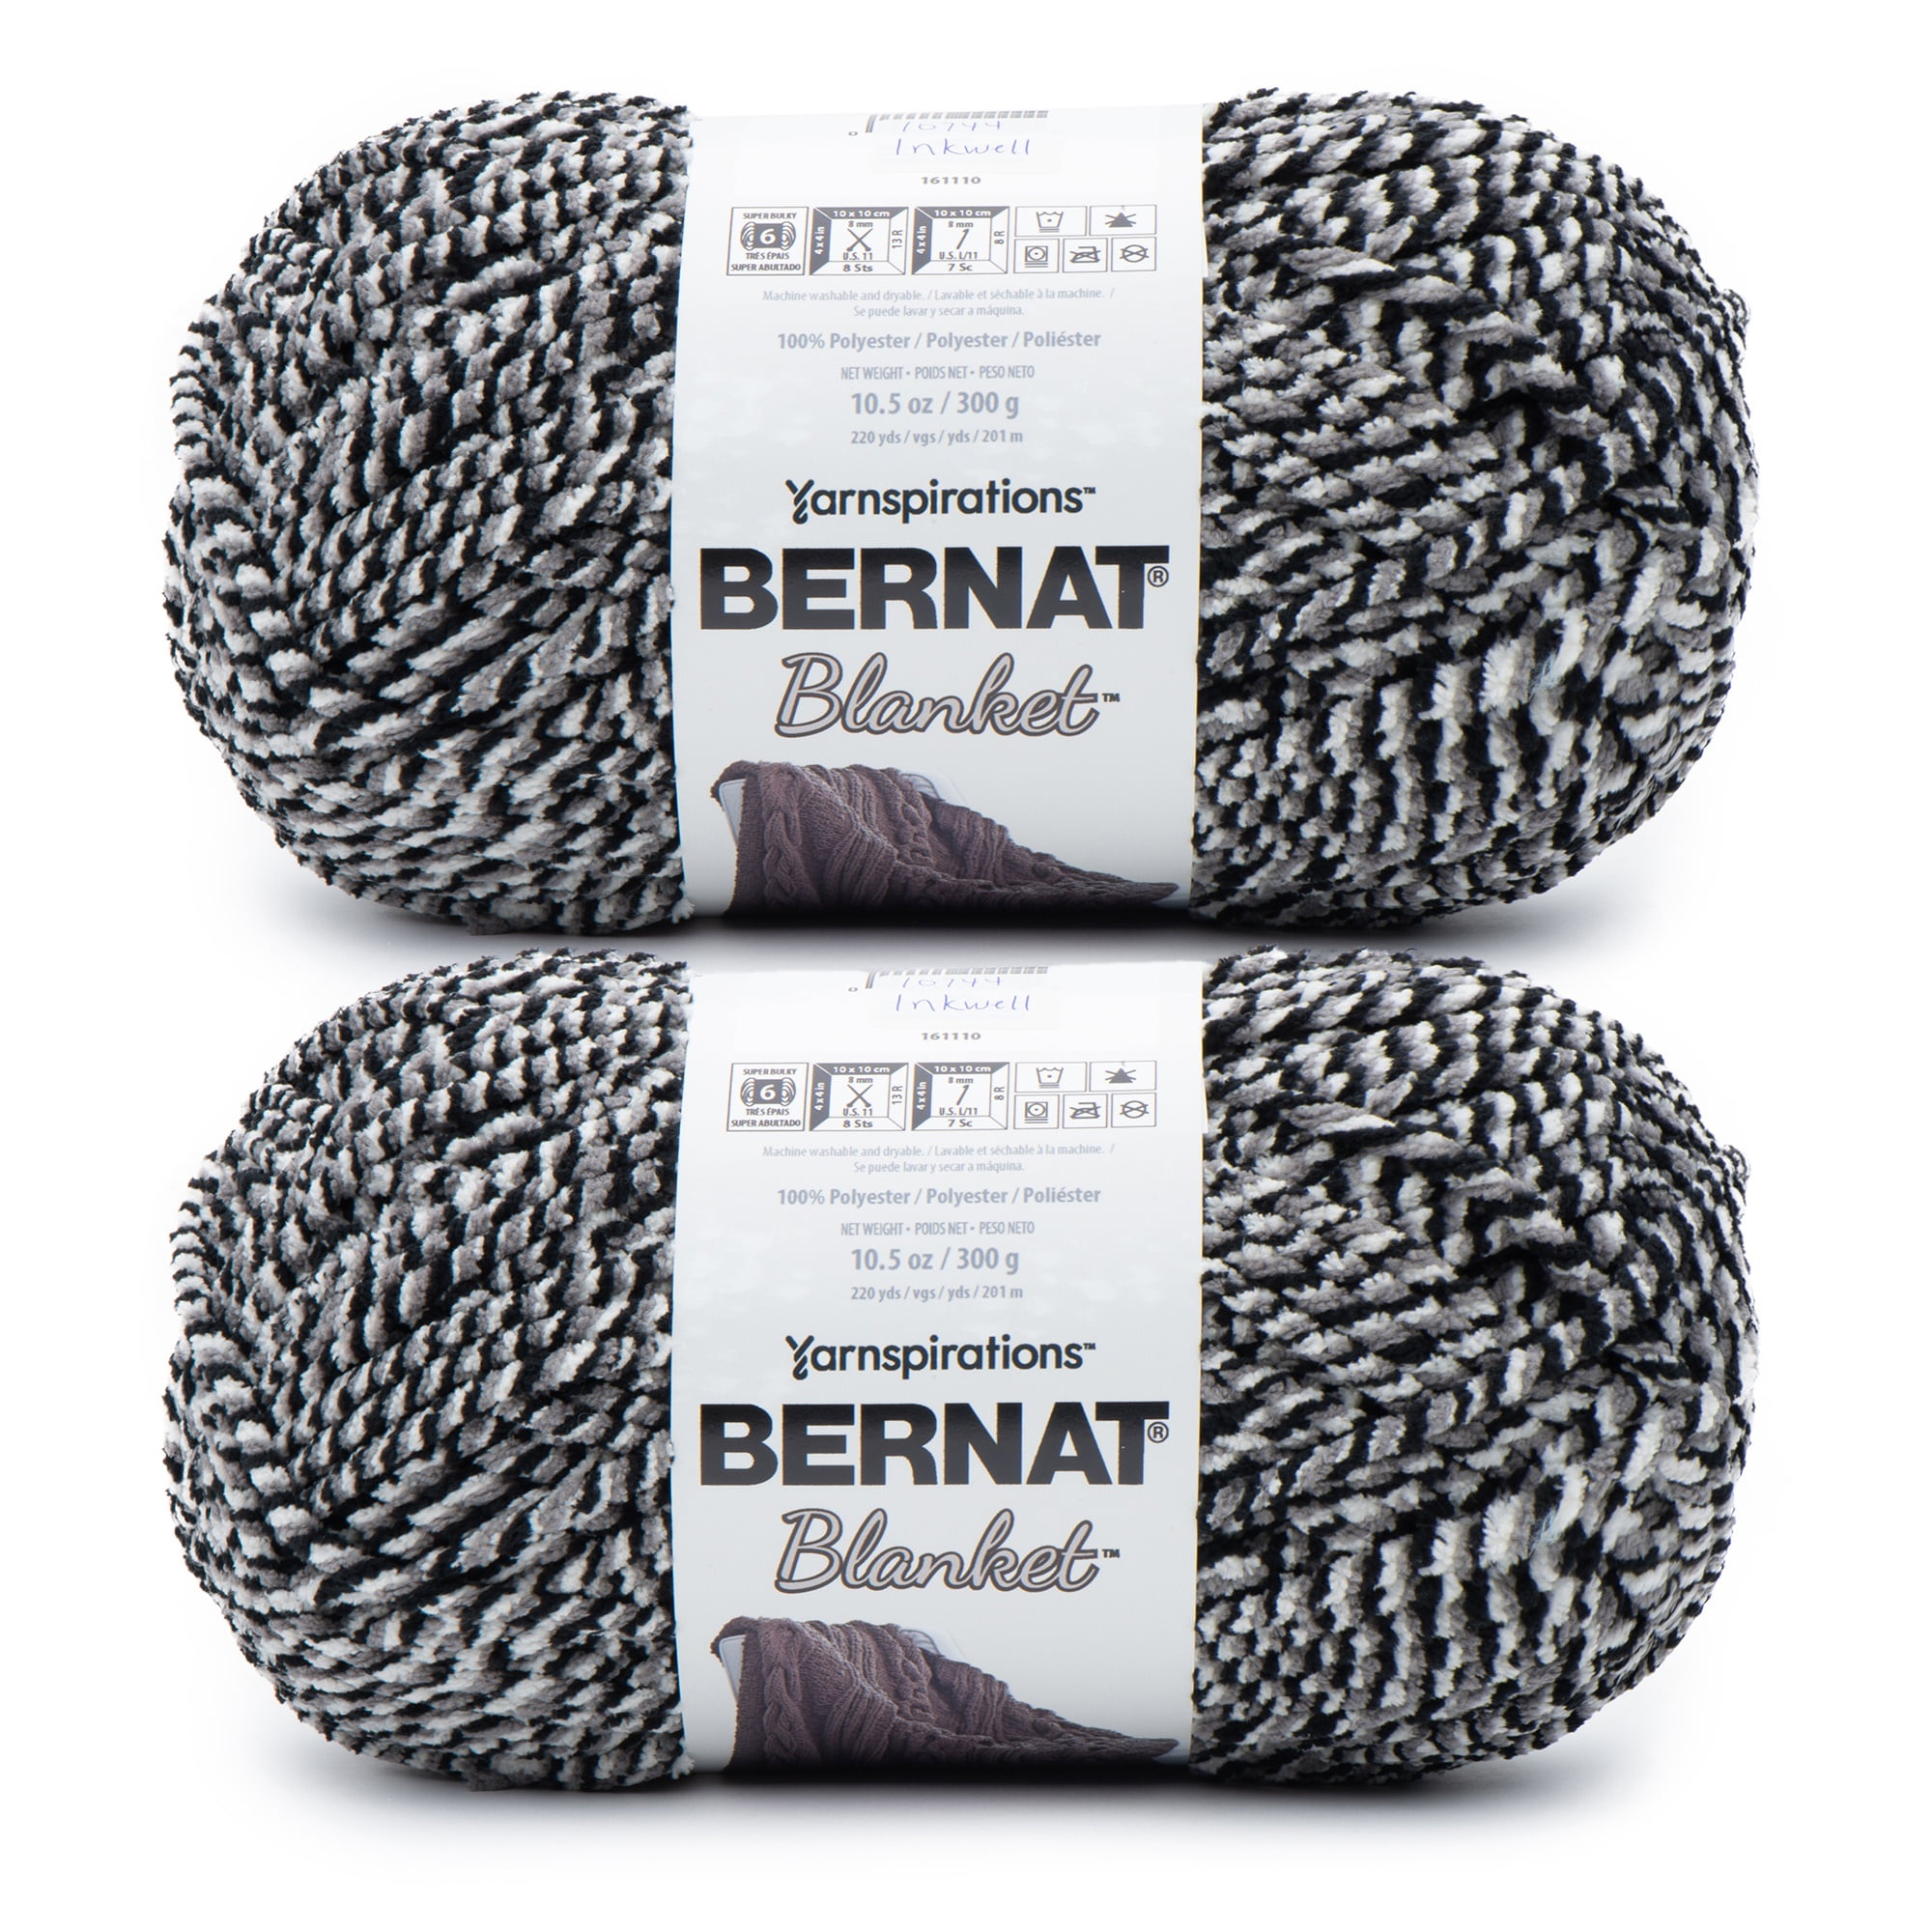 Bernat Blanket Inkwell Yarn - 2 Pack of 300g/10.5oz - Polyester